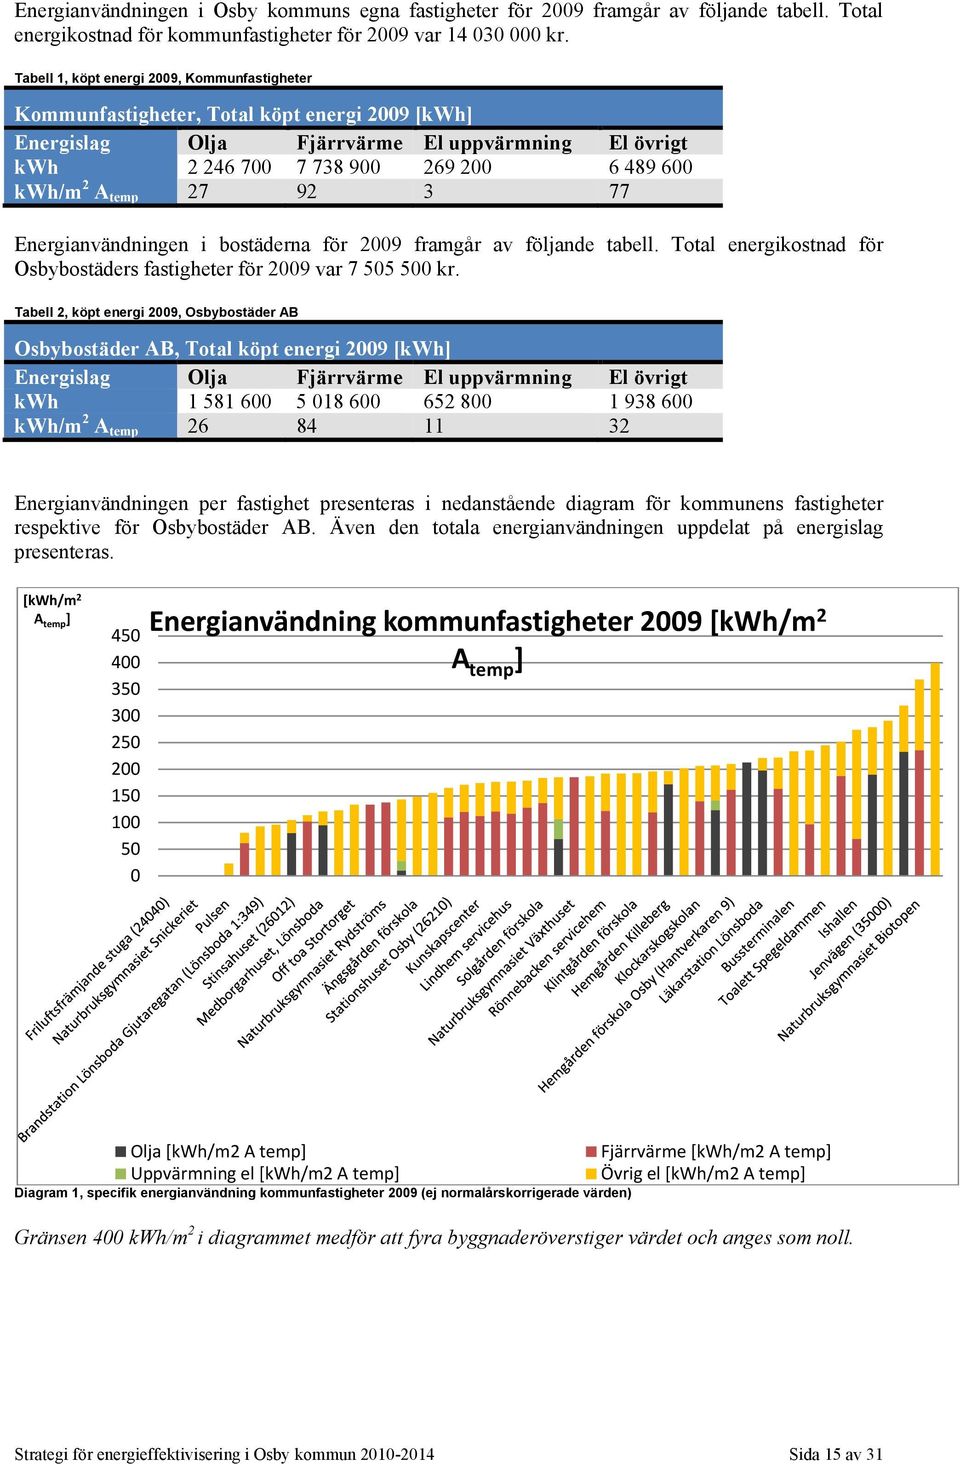 temp 27 92 3 77 Energianvändningen i bostäderna för 2009 framgår av följande tabell. Total energikostnad för Osbybostäders fastigheter för 2009 var 7 505 500 kr.